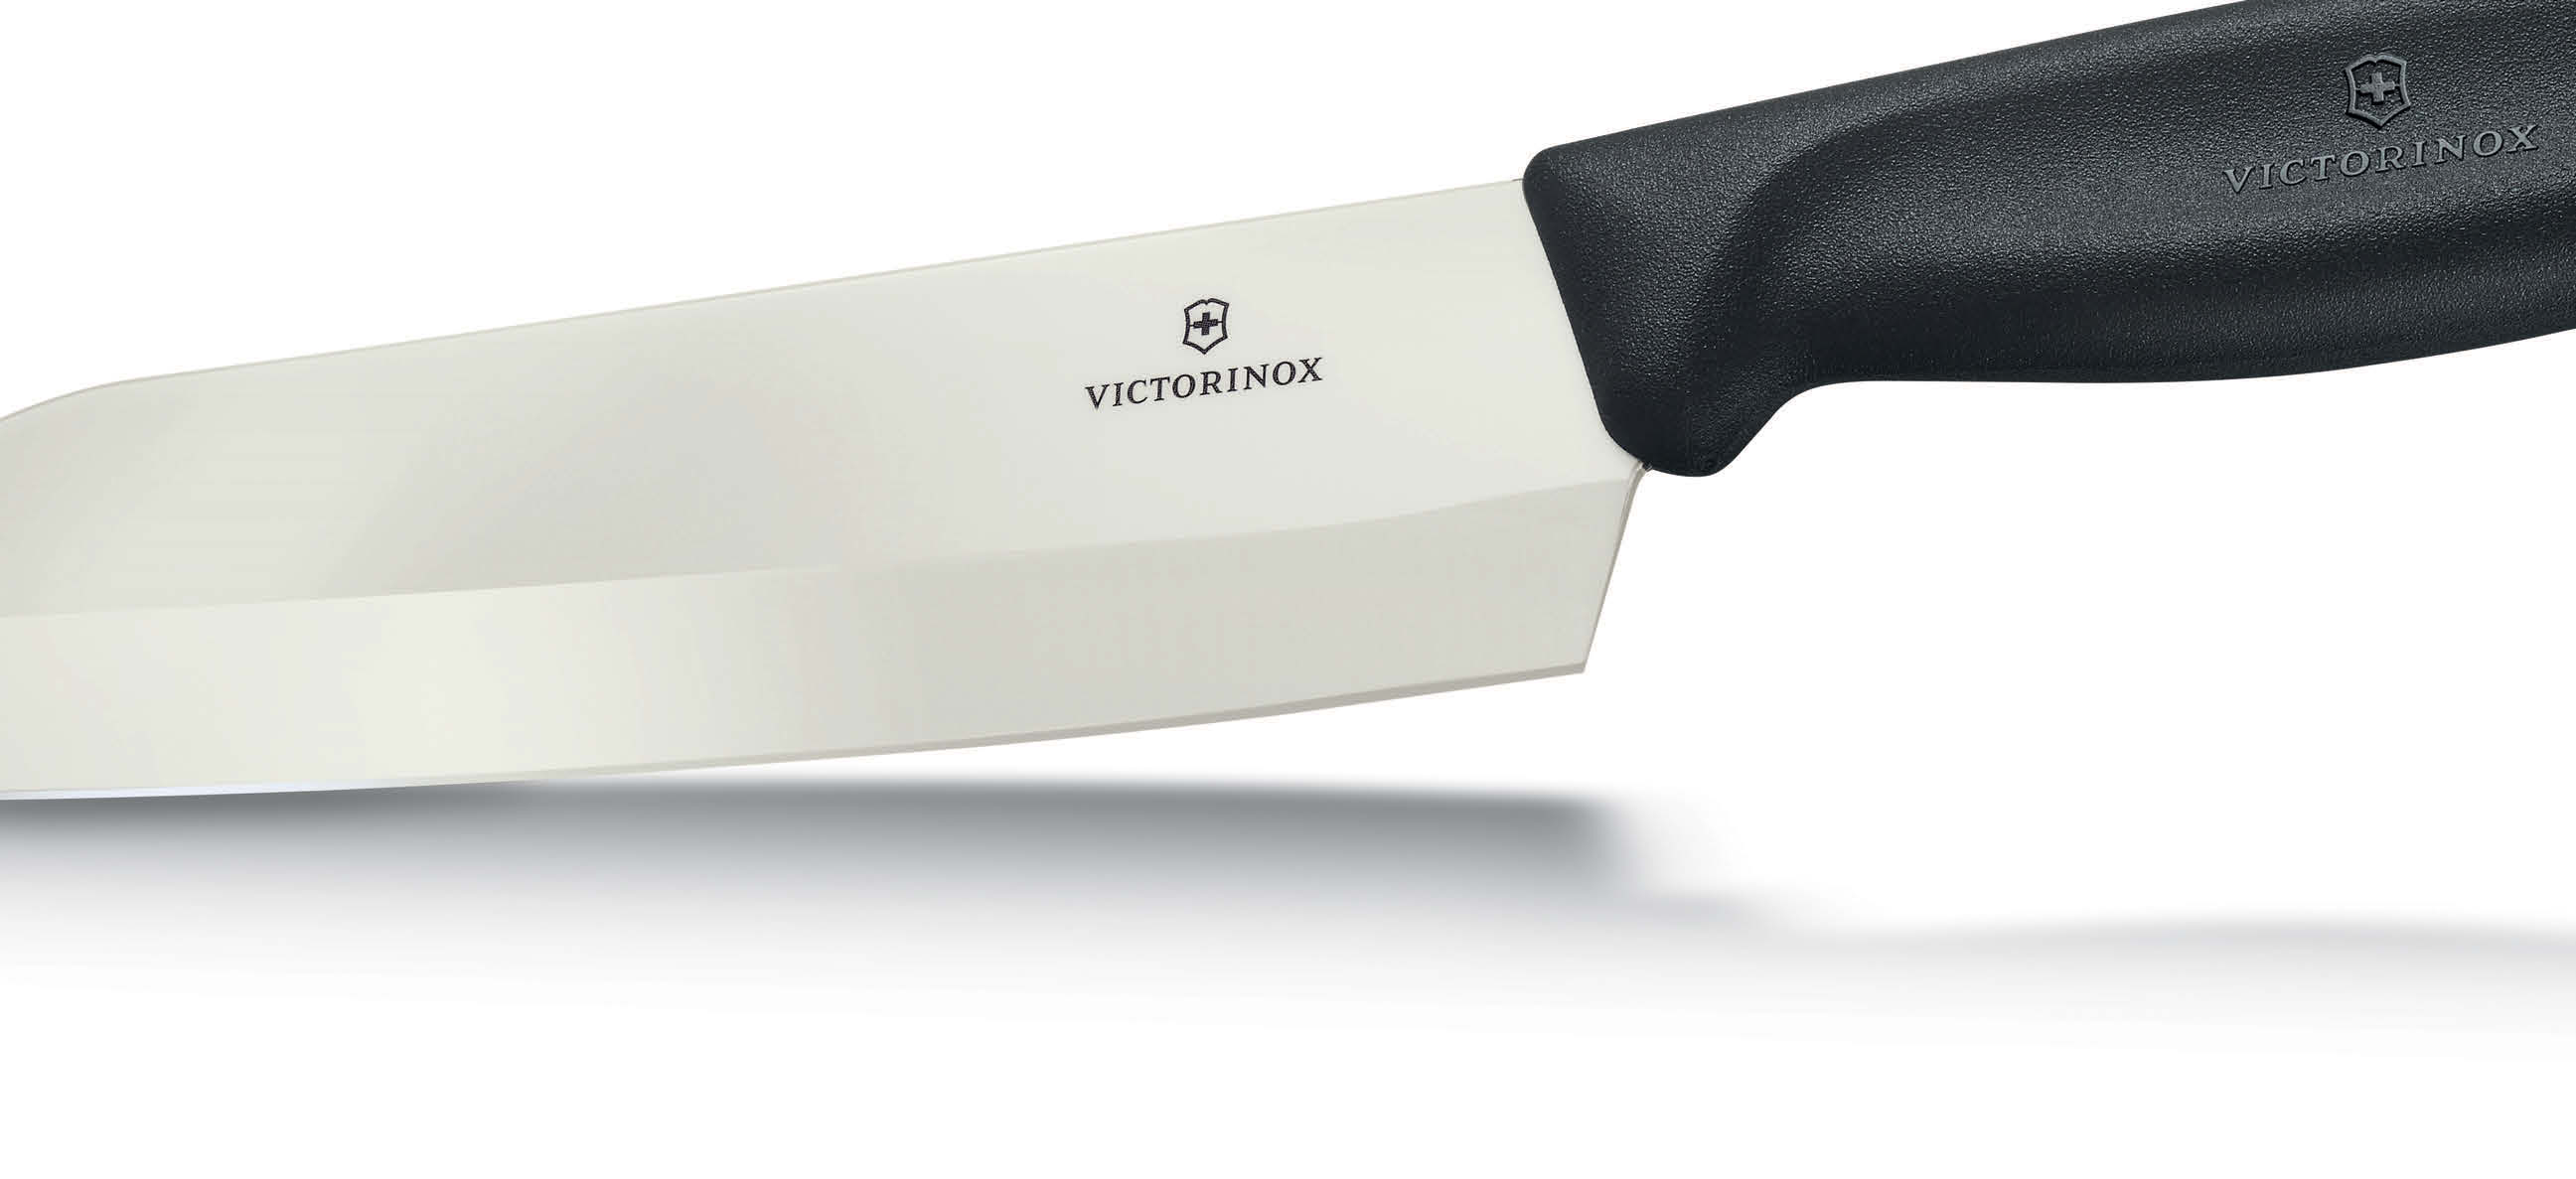 CERÁMICA CERÁMICA Los elegantes cuchillos de cerámica Victorinox se fabrican con polvo de óxido de circonio ultrapuro.